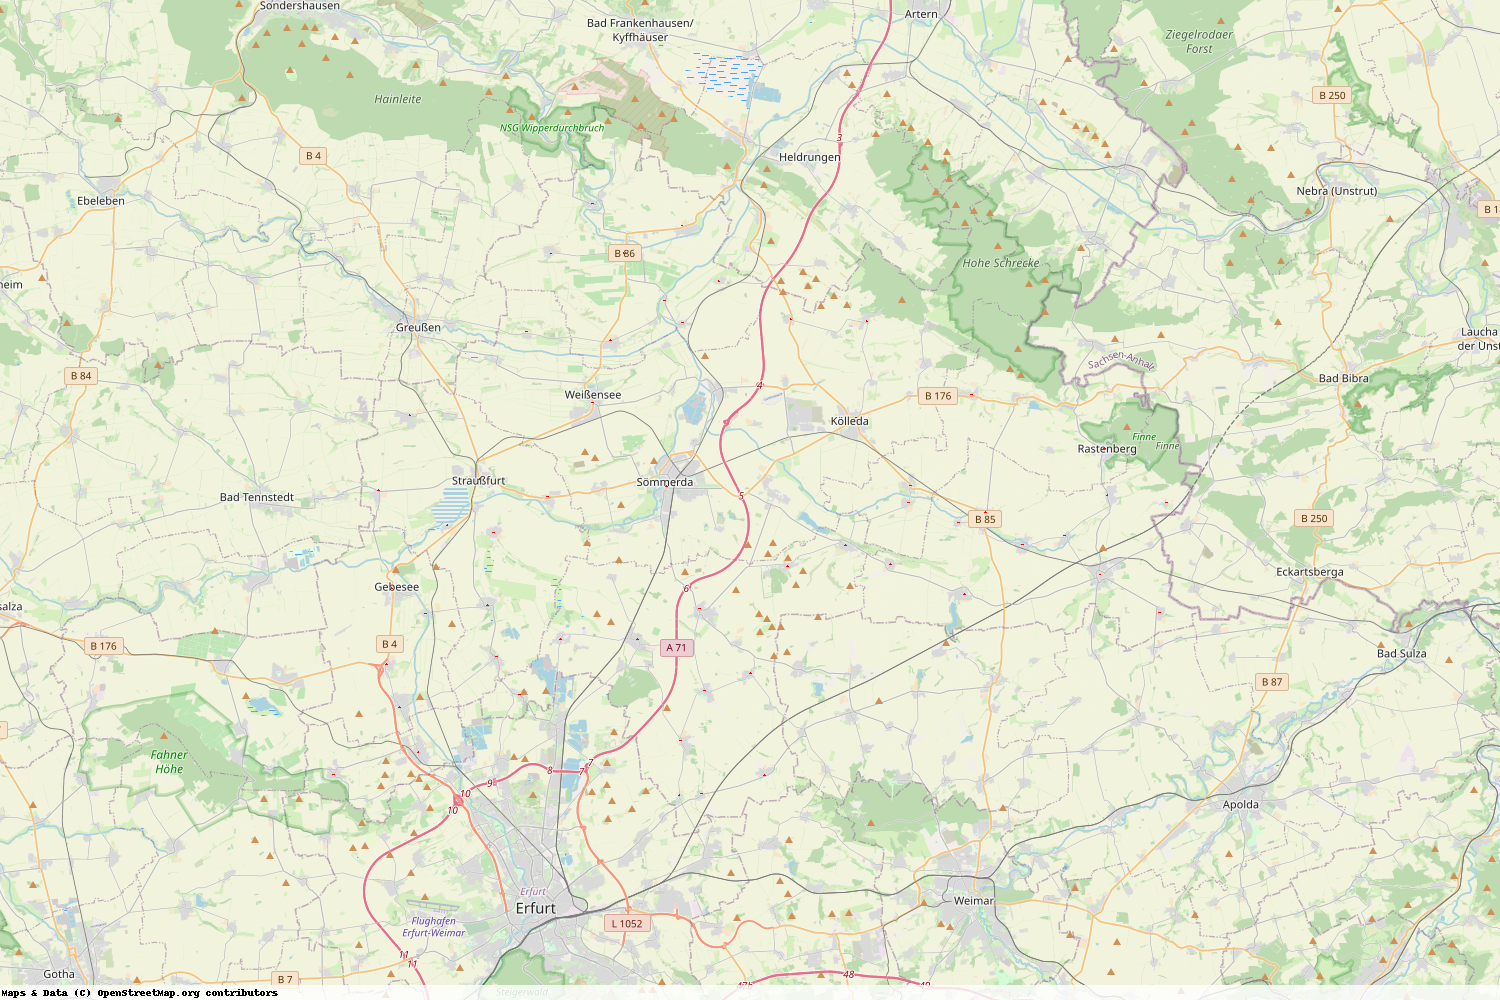 Ist gerade Stromausfall in Thüringen - Sömmerda?